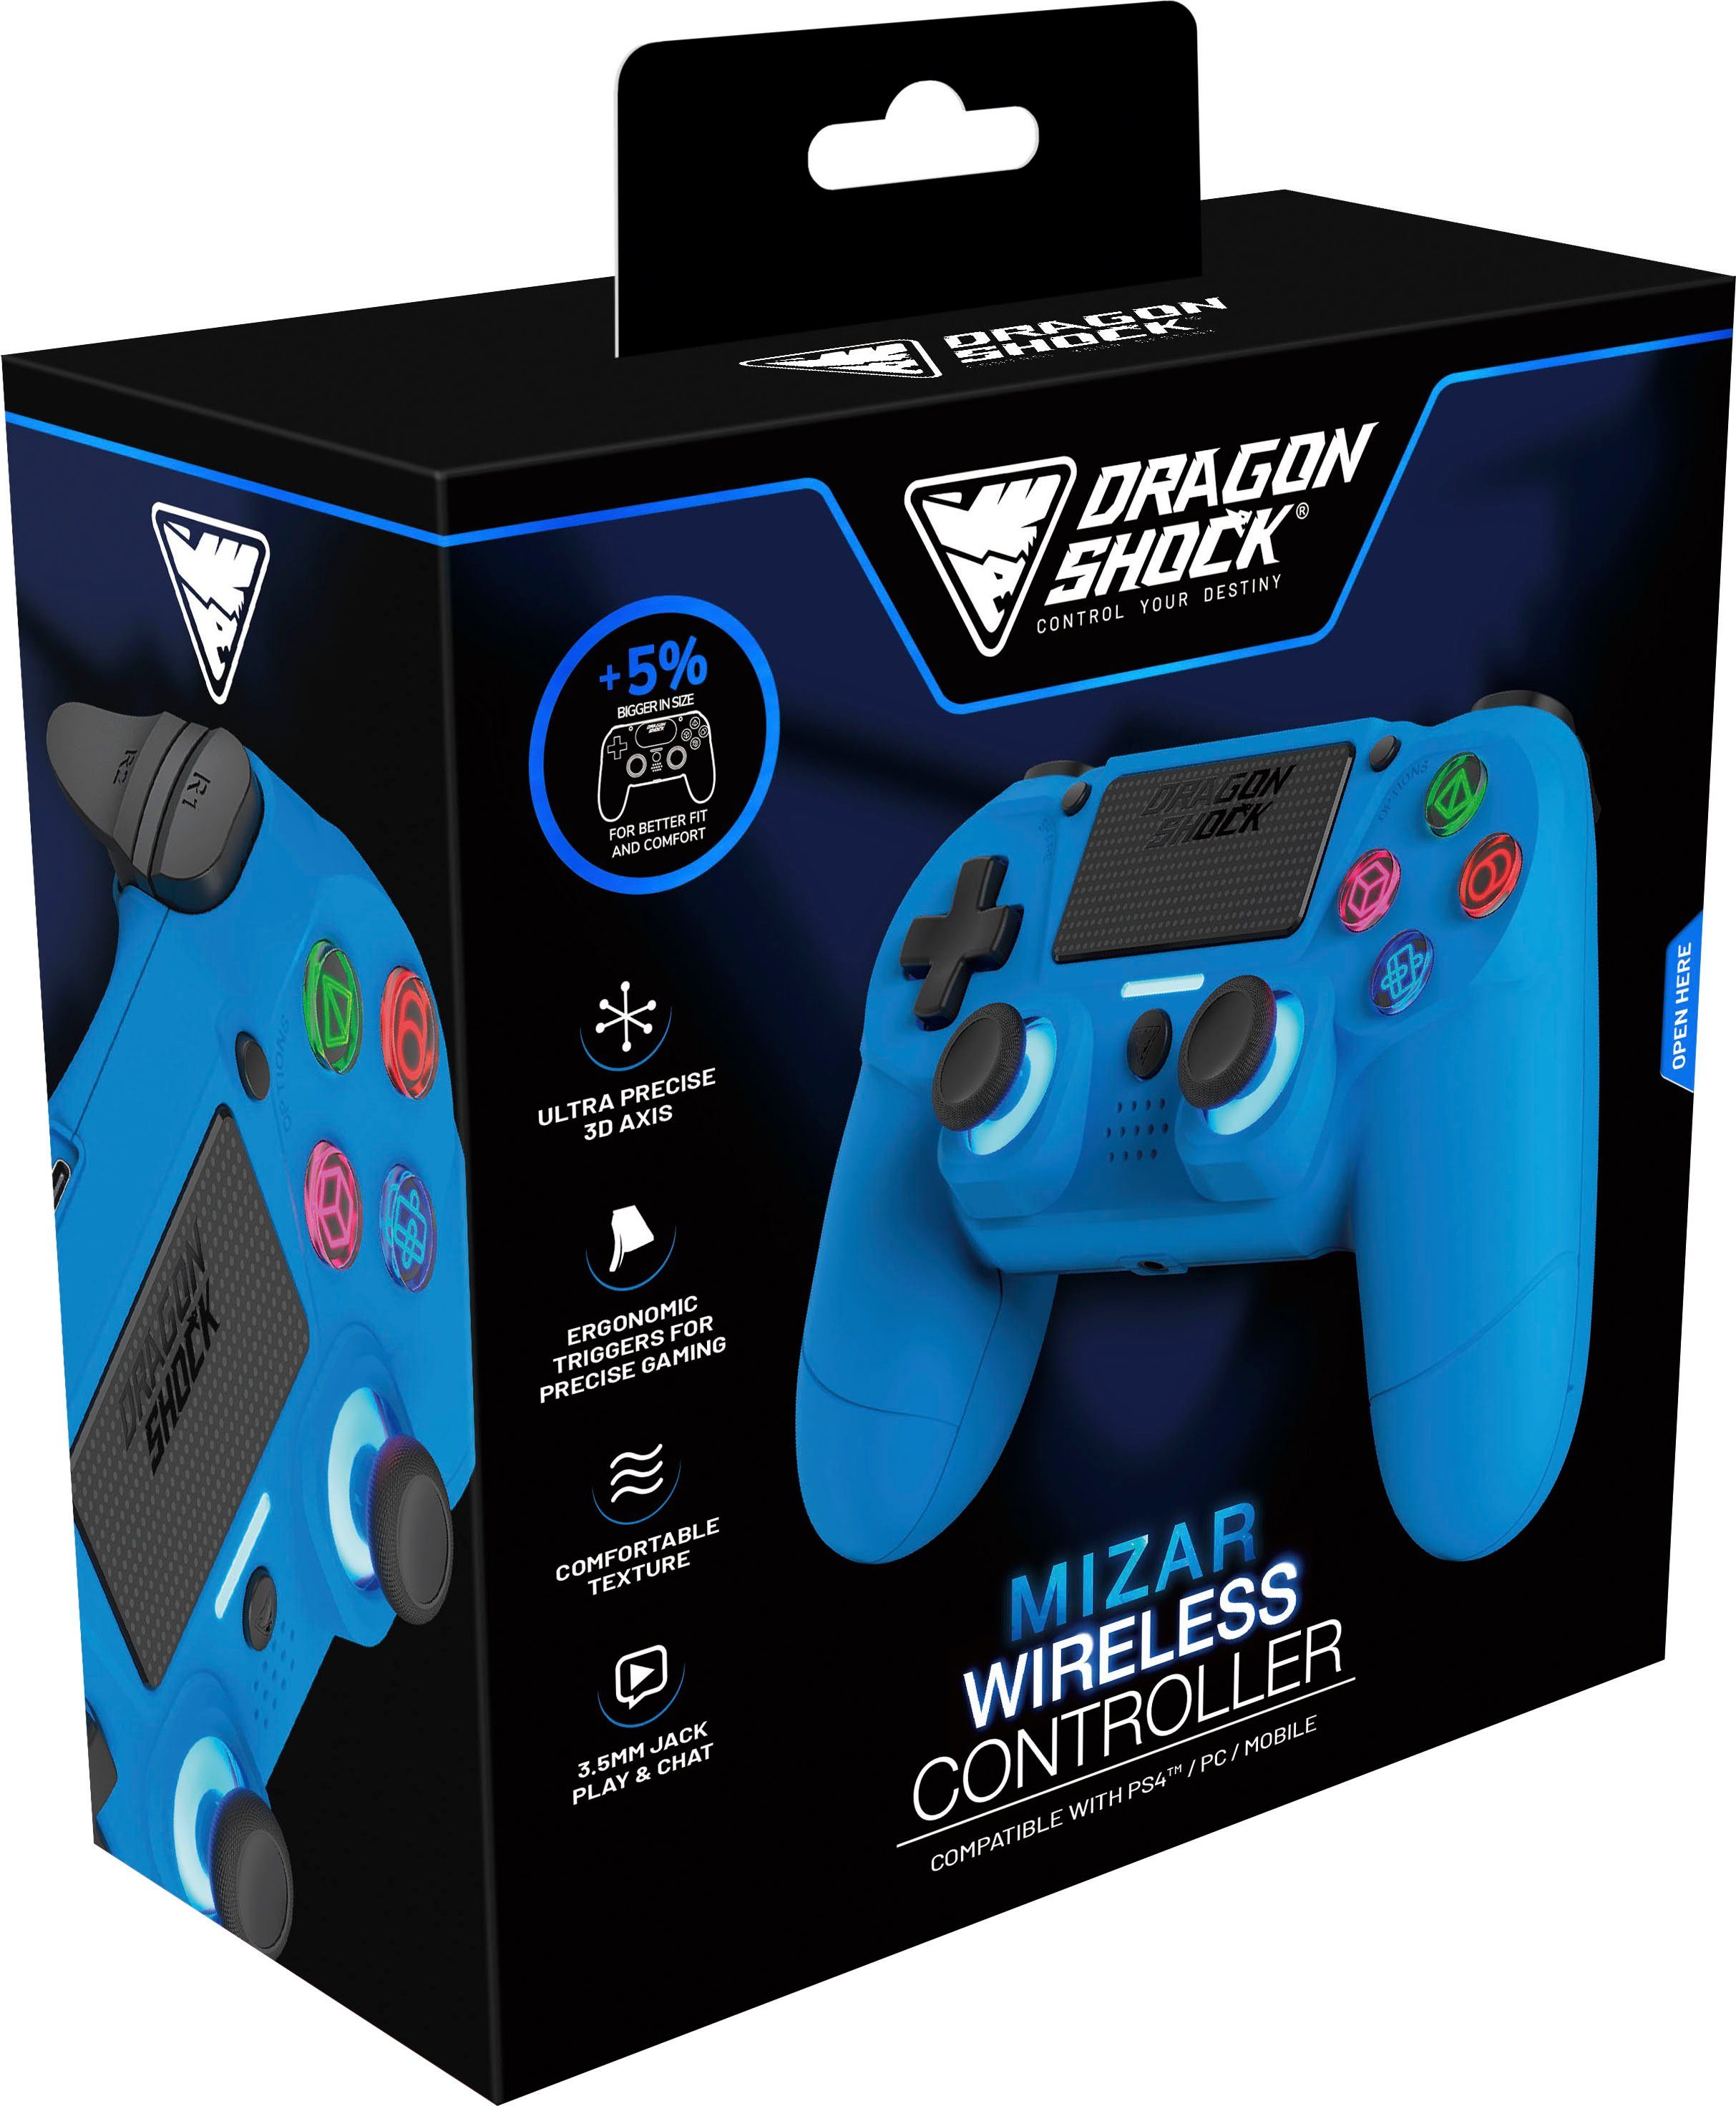 DRAGONSHOCK Mizar Wireless PS4 für Controller blau